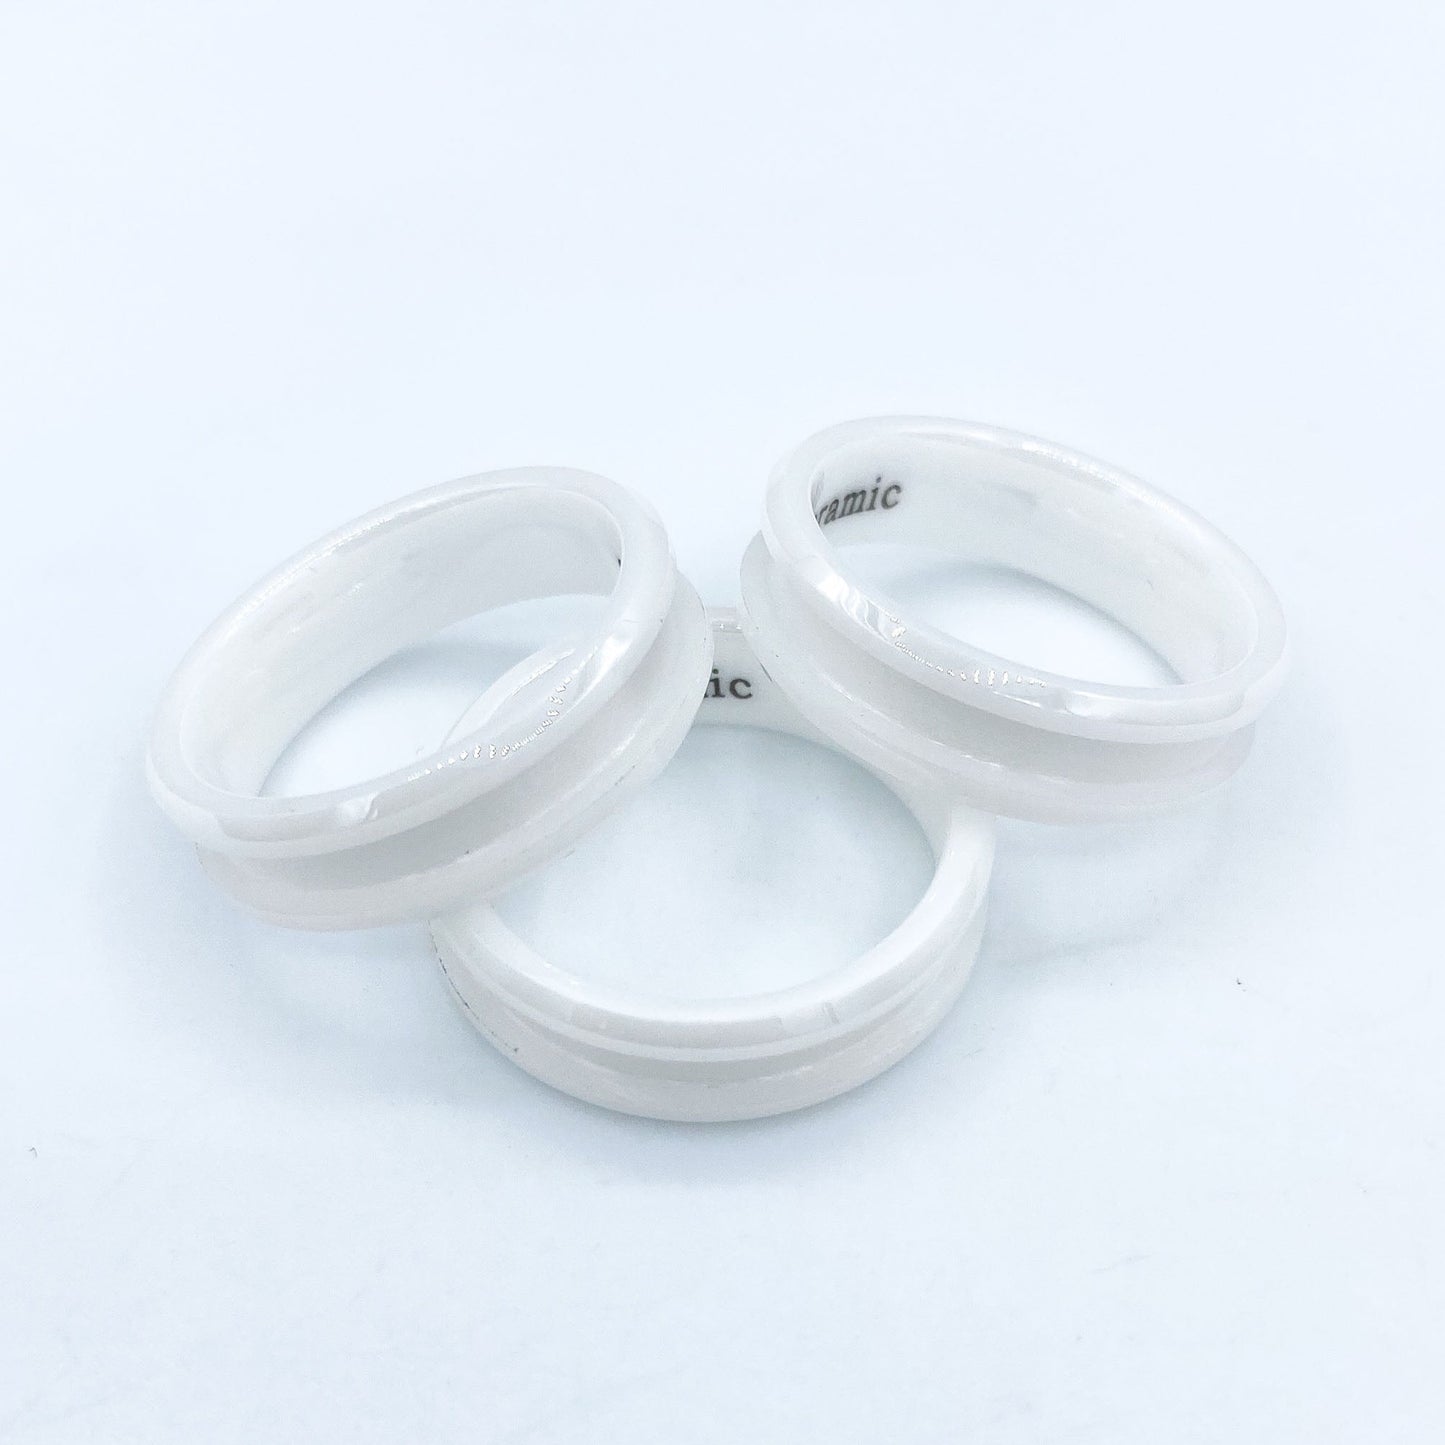 10 Pack - White Ceramic Ring Blank - Patrick Adair Supplies